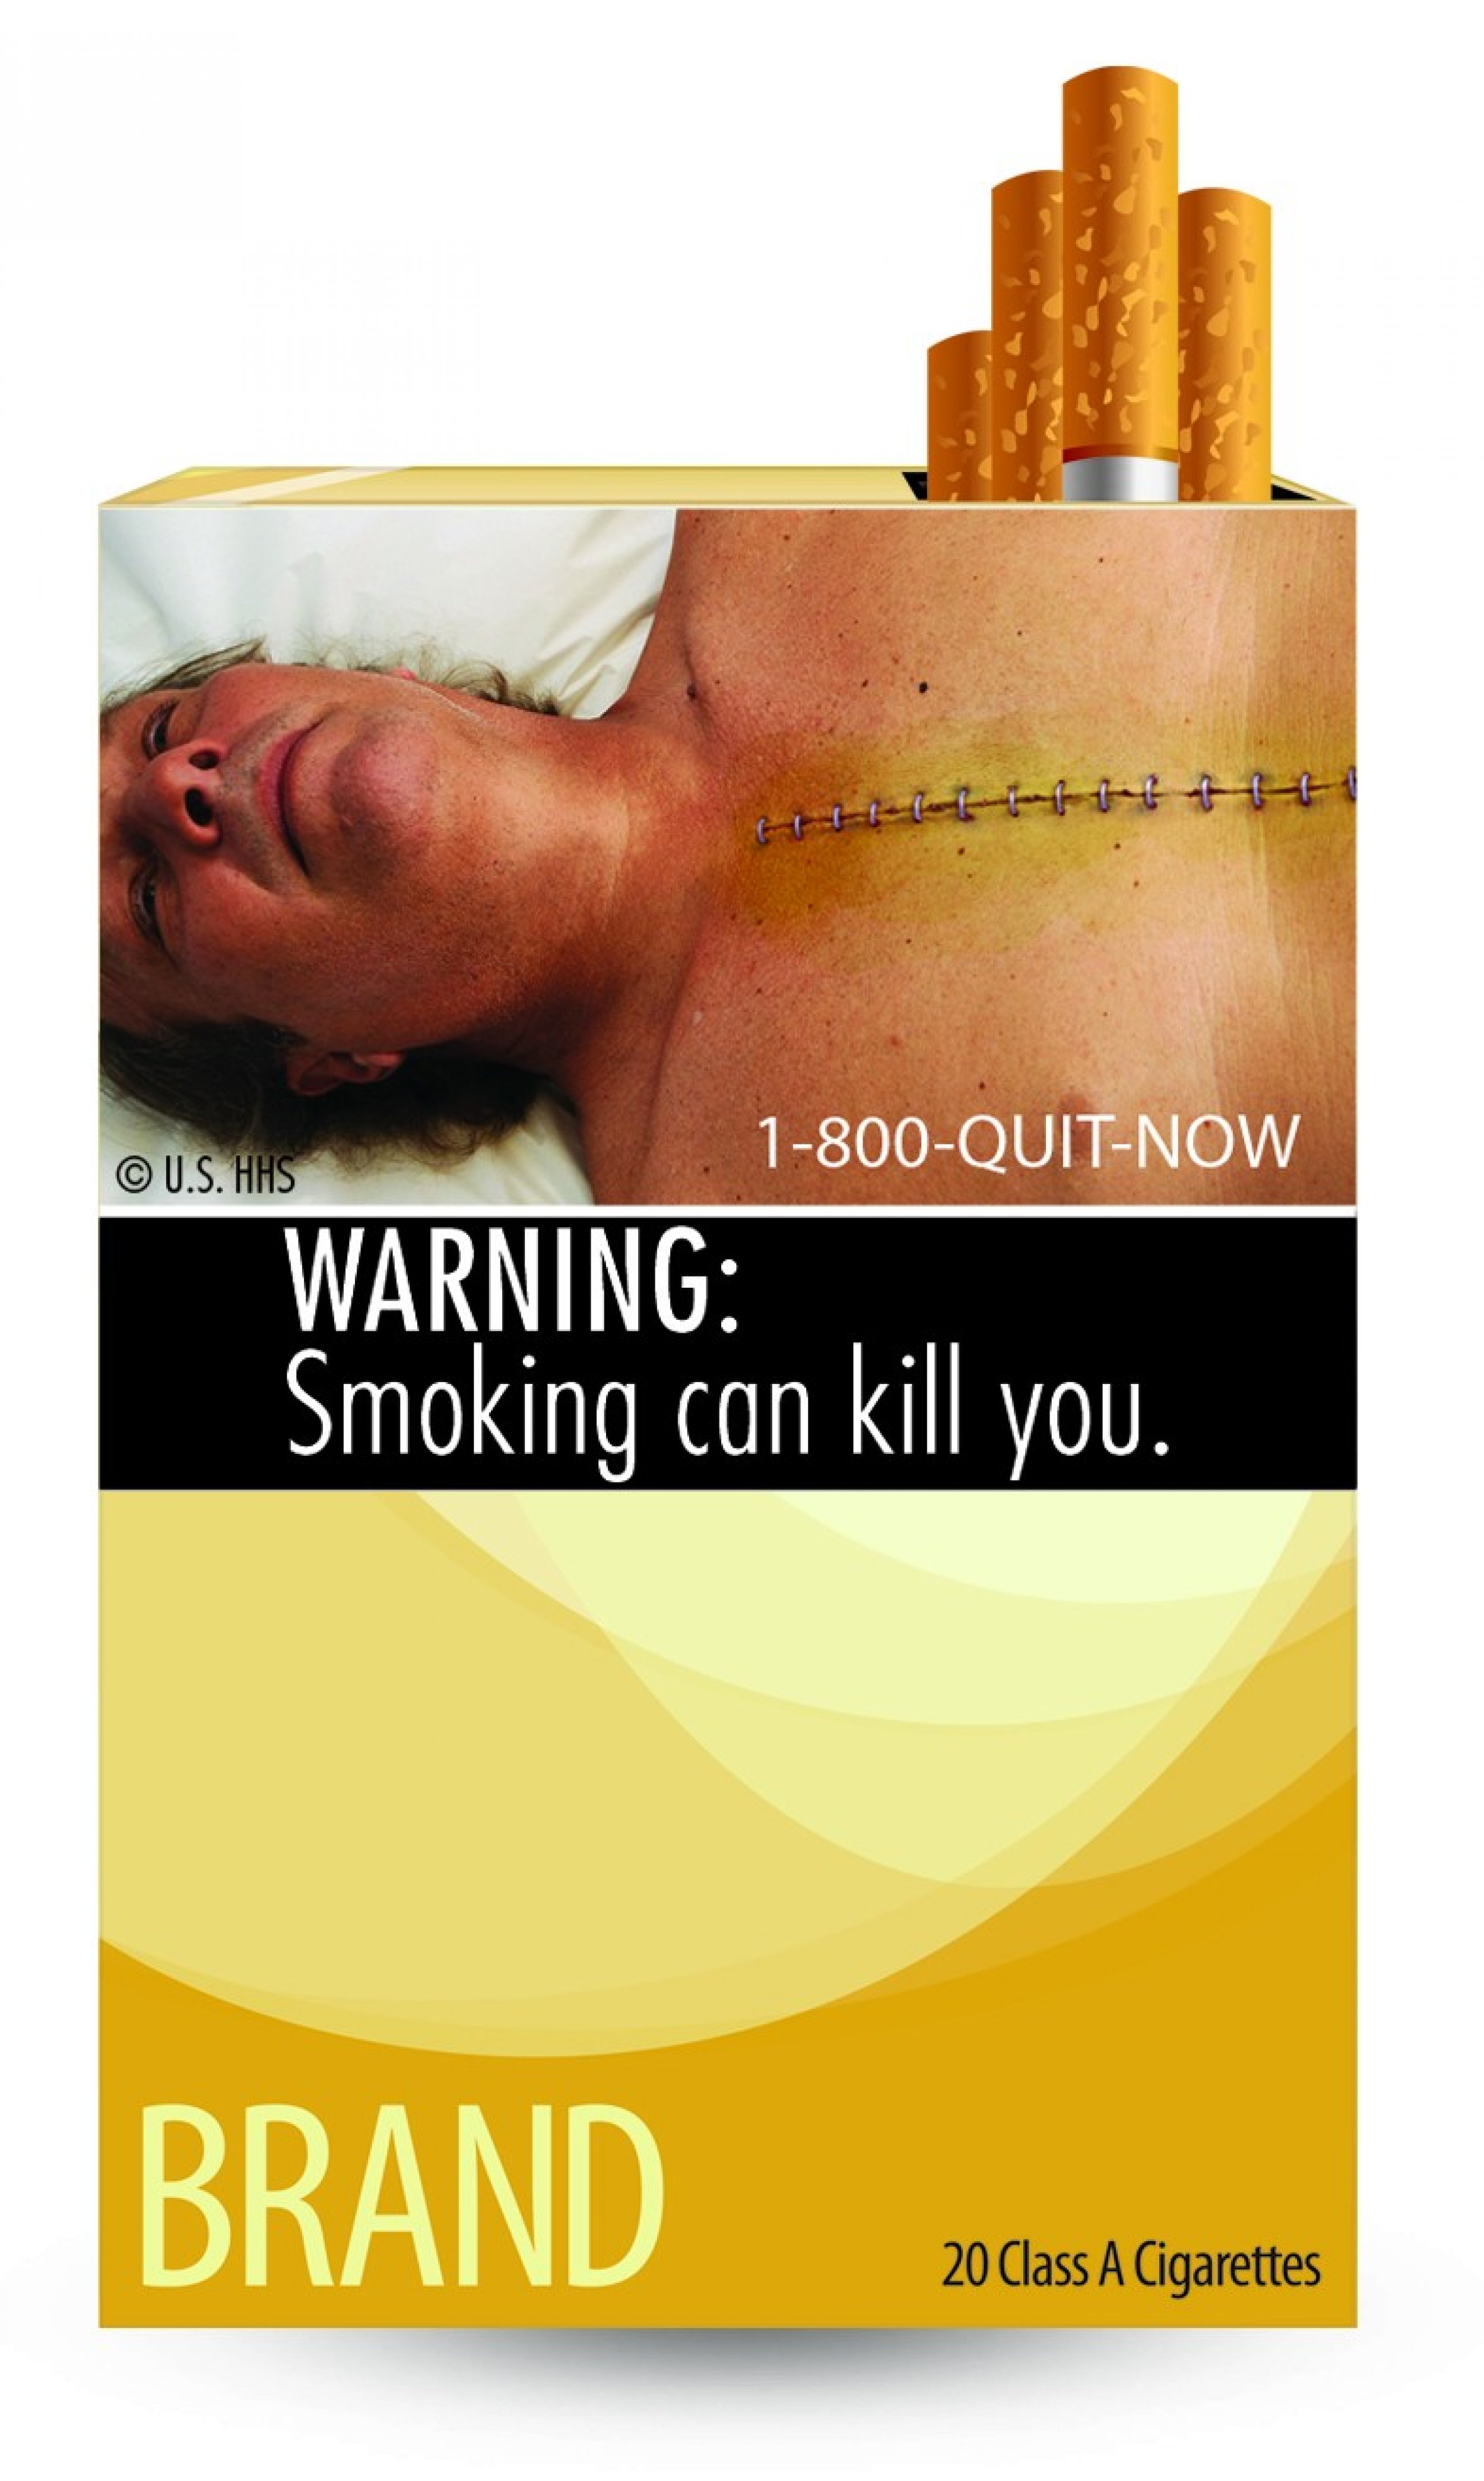 WARNING Smoking can kill you.